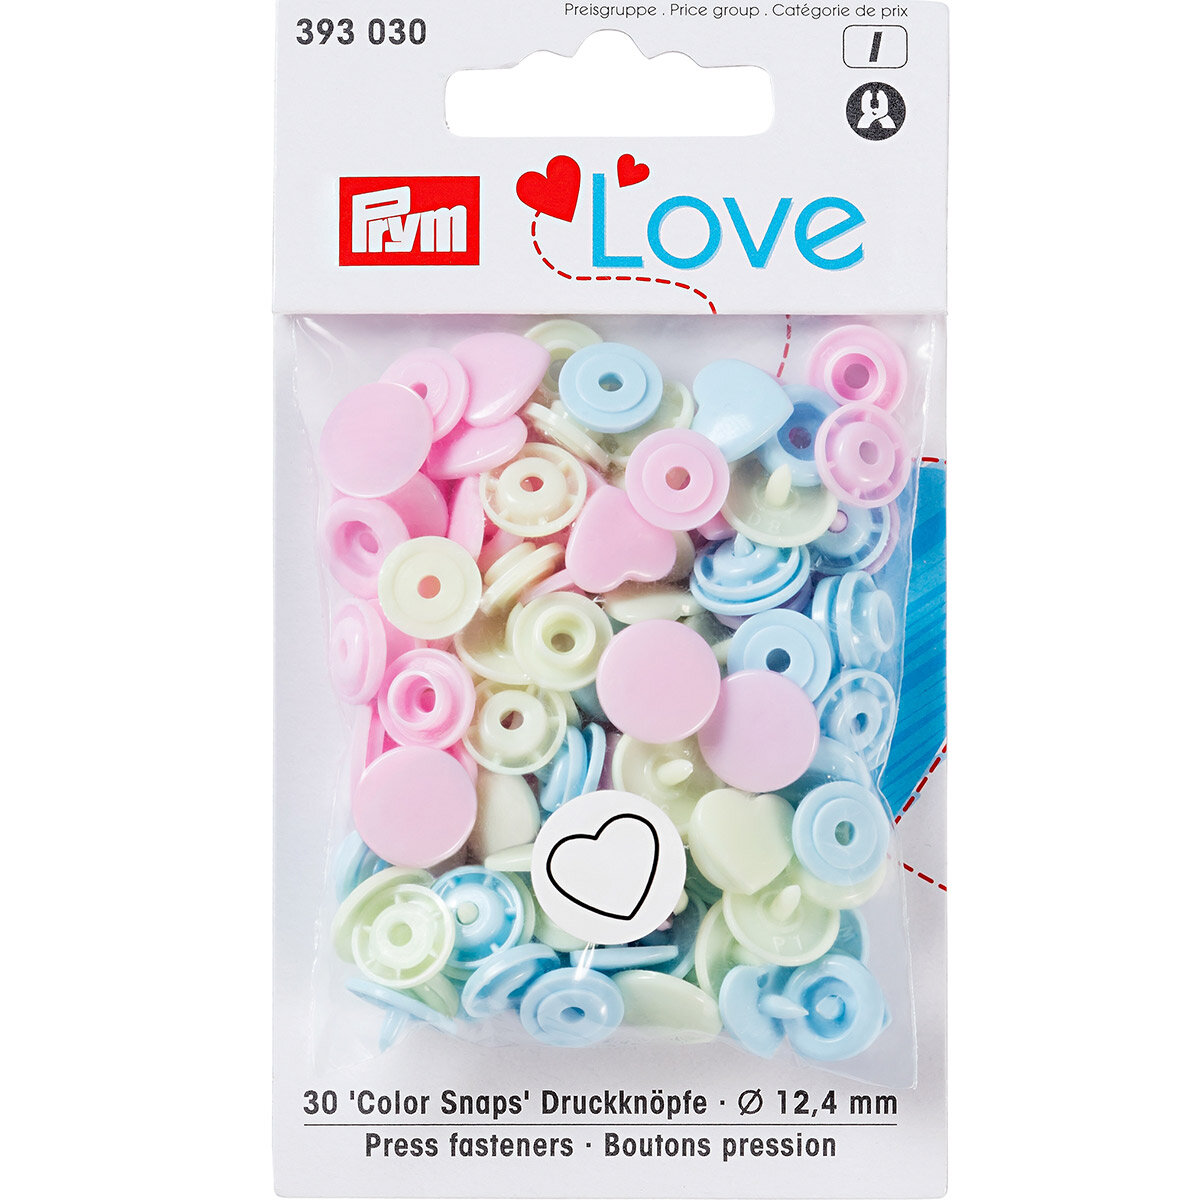 Кнопки PRYM "Color Snaps", Сердце, пластик, светло-зеленые, розовые, голубые, диаметр 12,4 мм, 30 шт (393030)